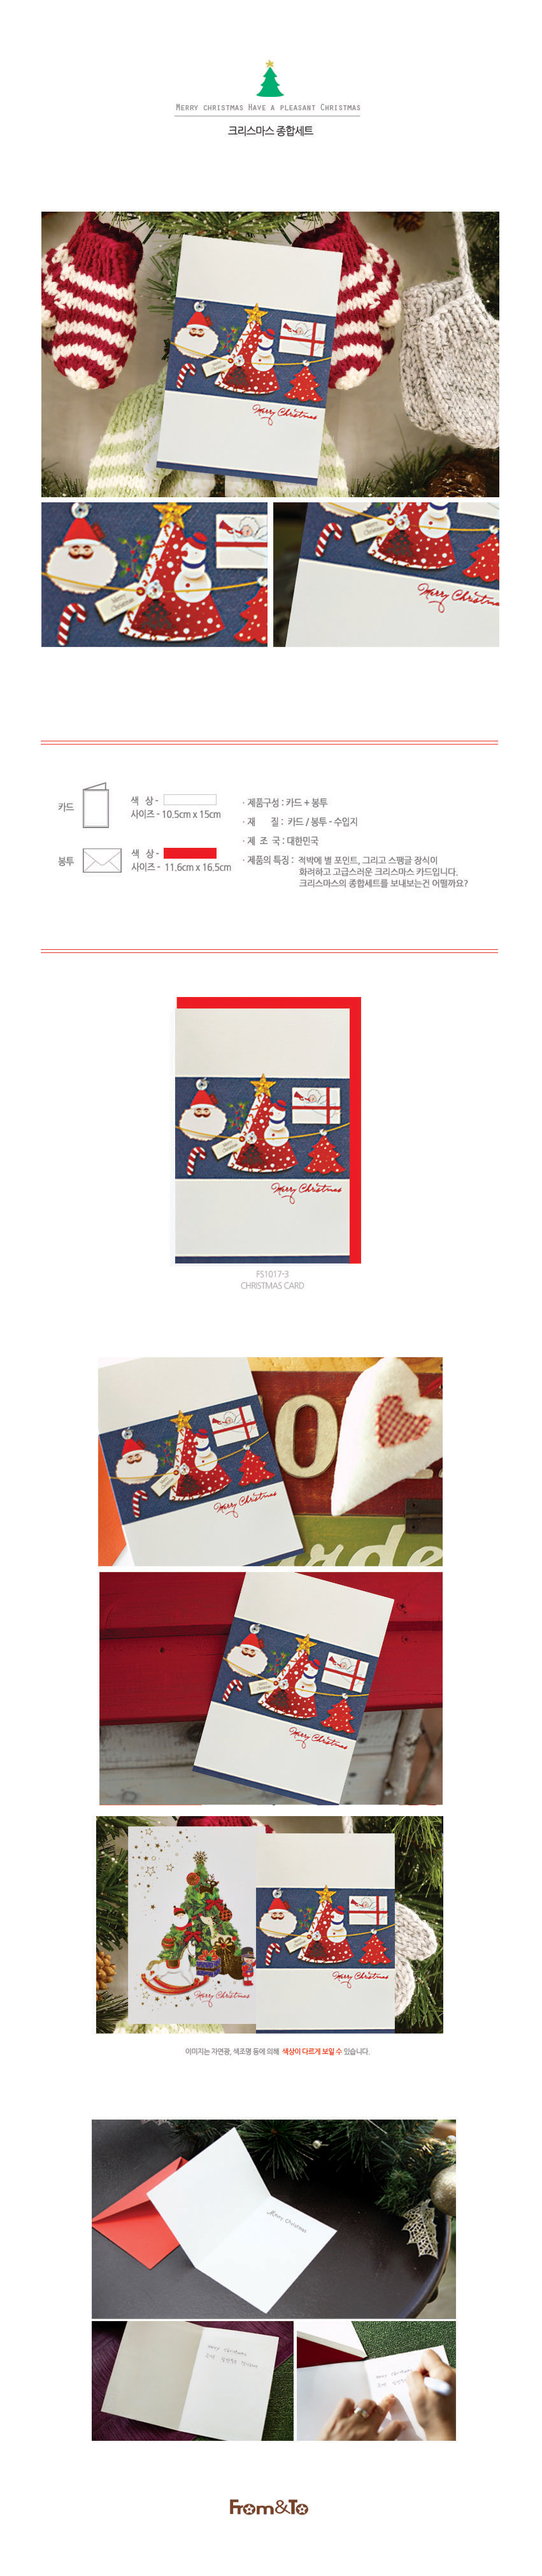 크리스마스 종합세트 카드 FS1017-3 1,000원 - 프롬앤투 디자인문구, 카드/편지/봉투, 카드, 크리스마스 카드 바보사랑 크리스마스 종합세트 카드 FS1017-3 1,000원 - 프롬앤투 디자인문구, 카드/편지/봉투, 카드, 크리스마스 카드 바보사랑